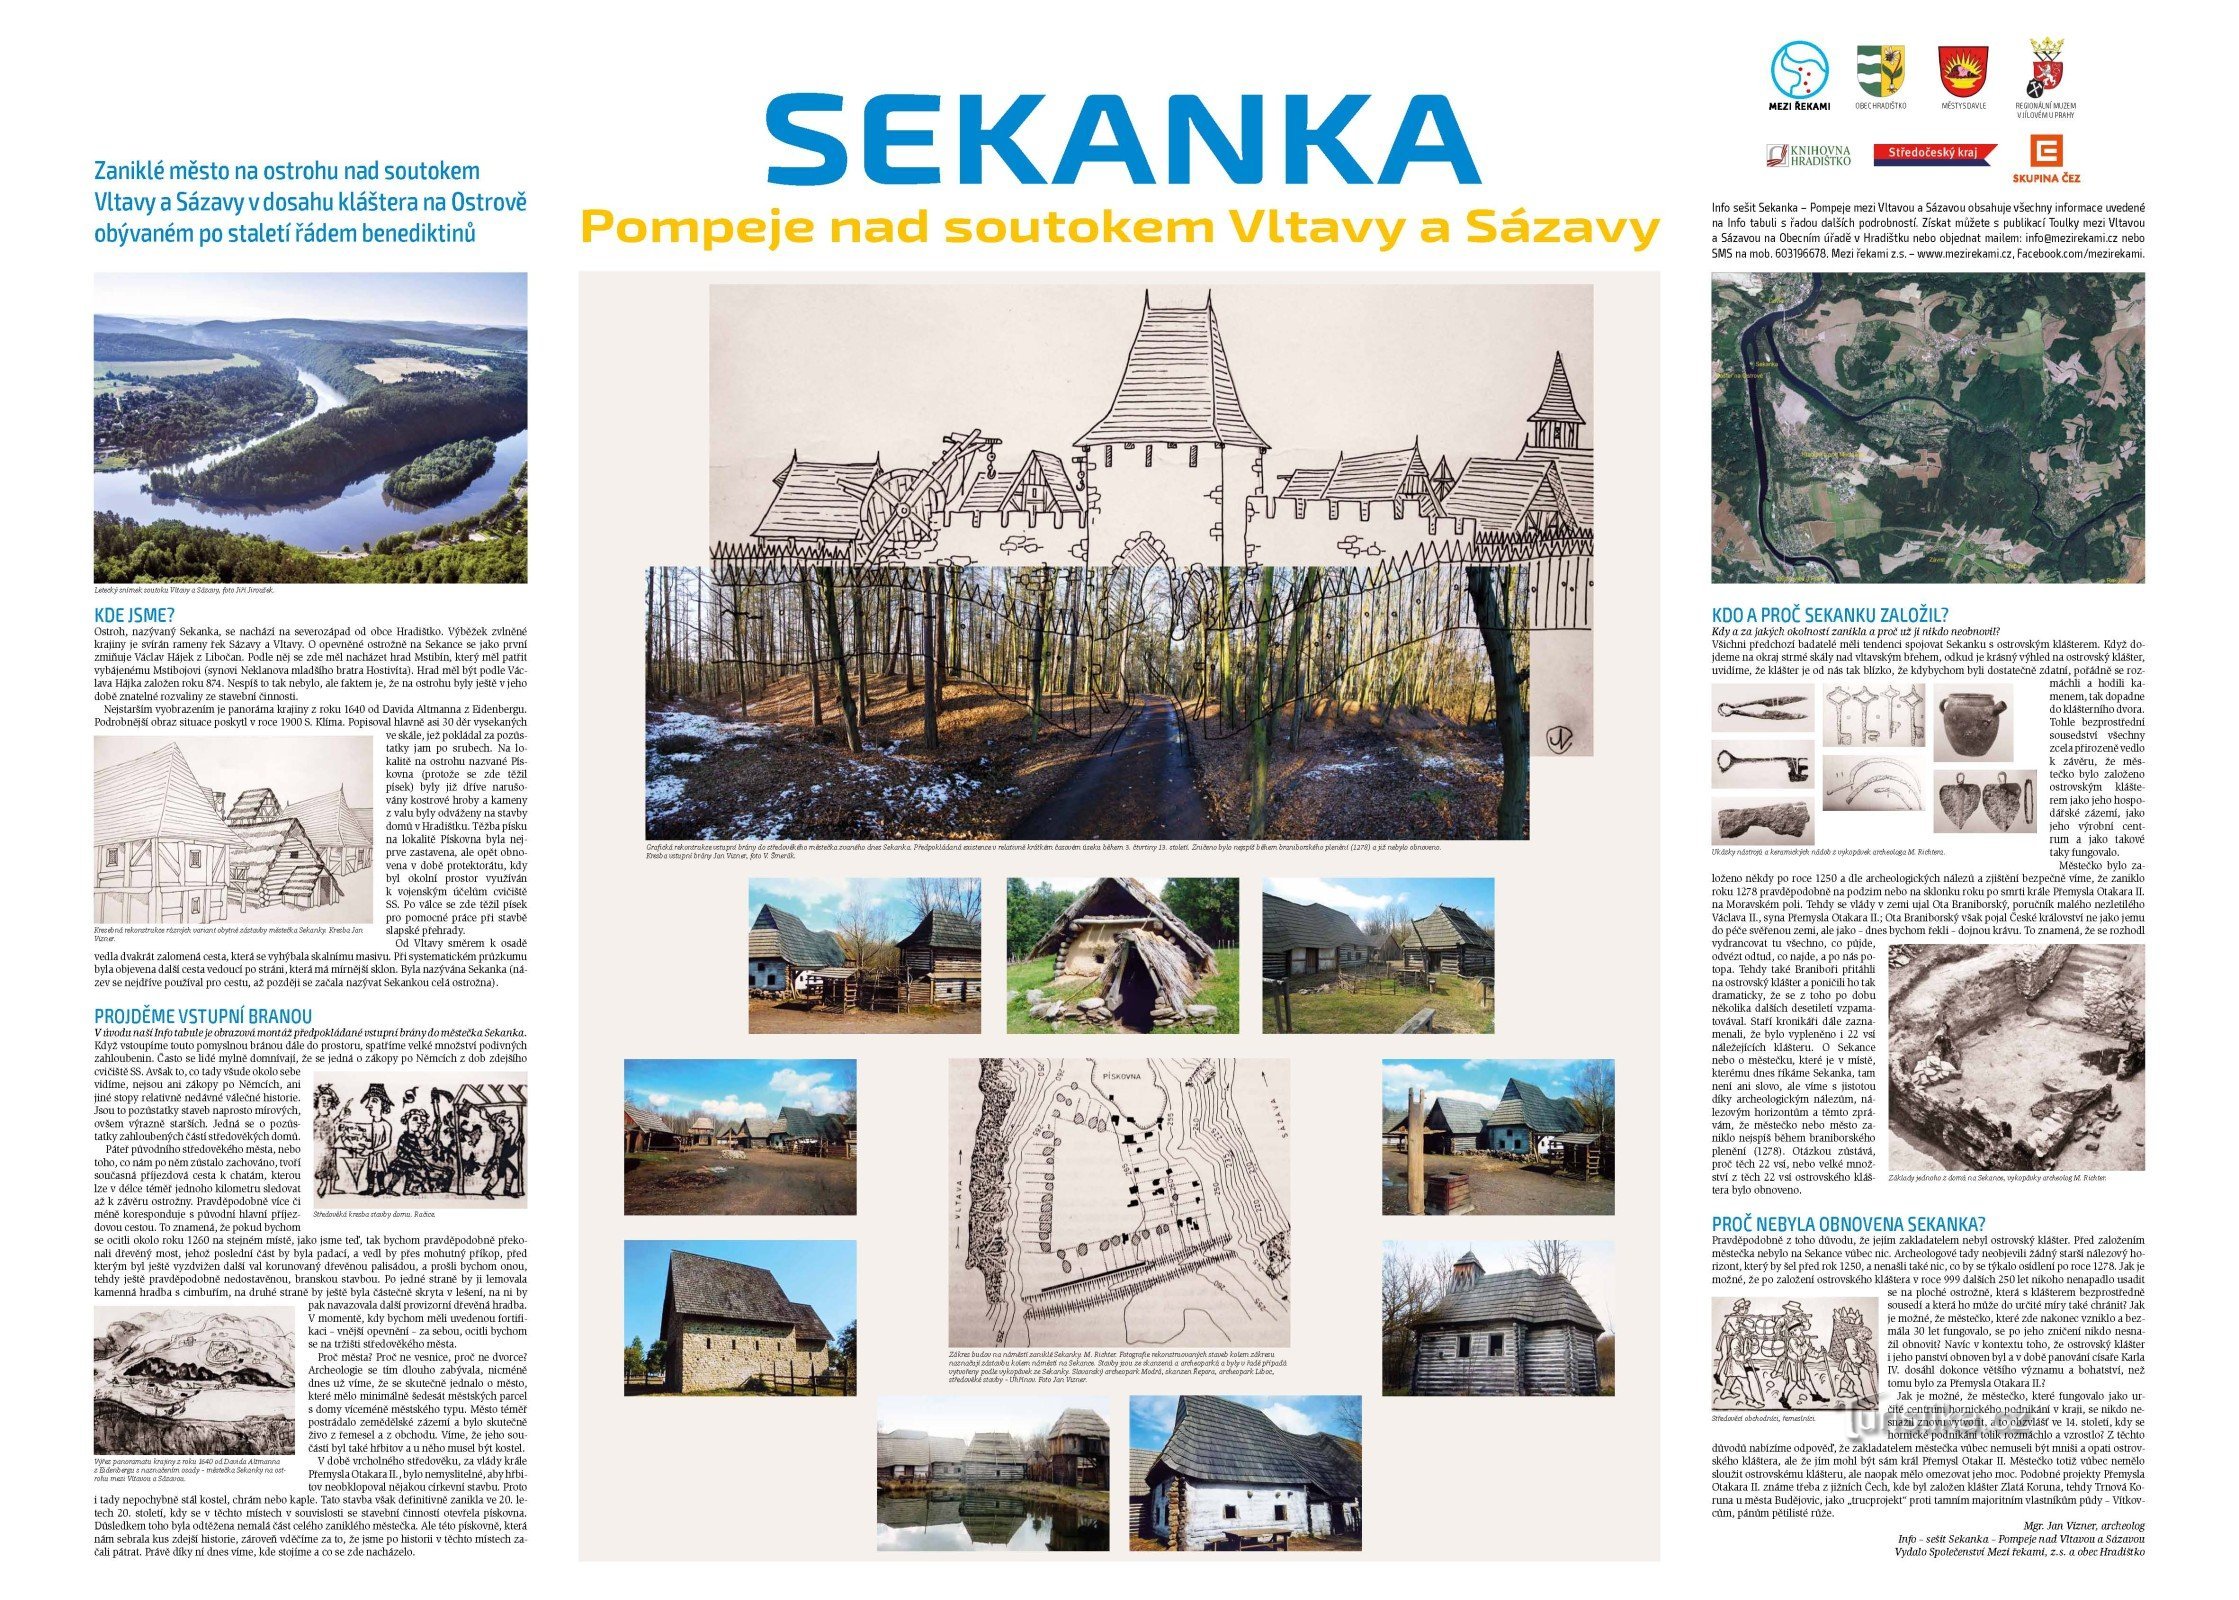 Πίνακας πληροφοριών με την ιστορία της Sekanka